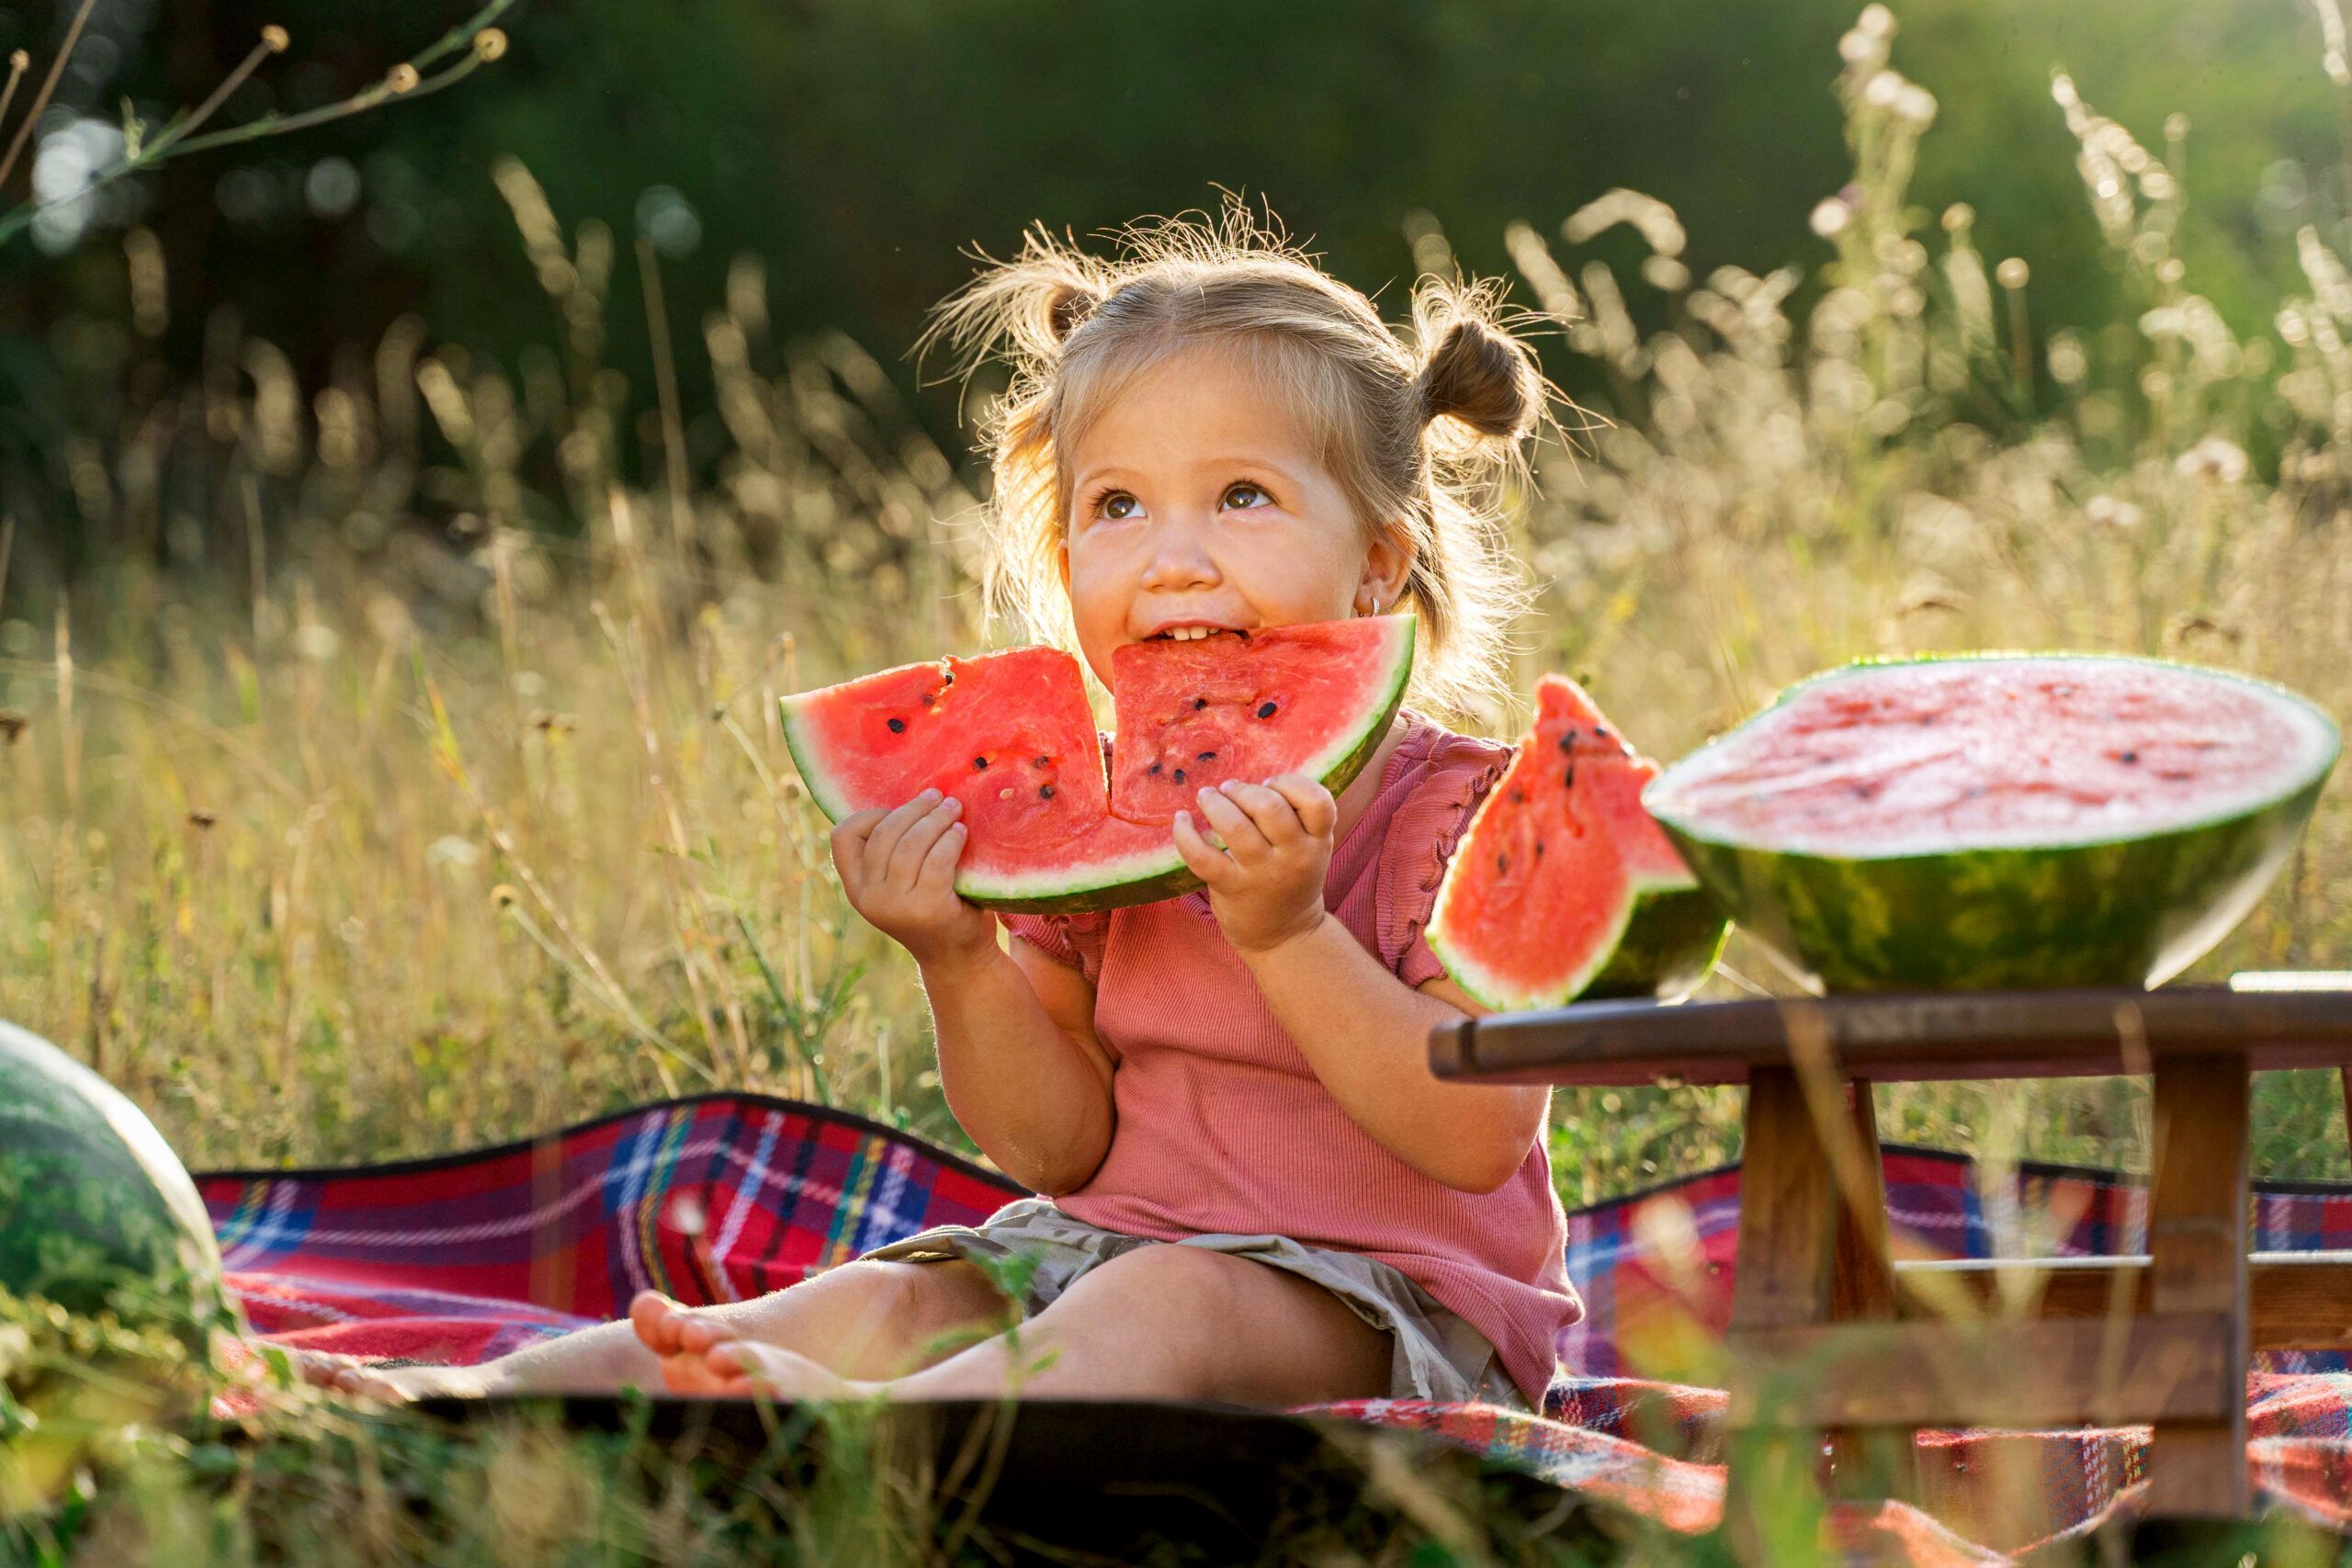 Alimentación sana para niños: menús y productos adecuados que les encantan